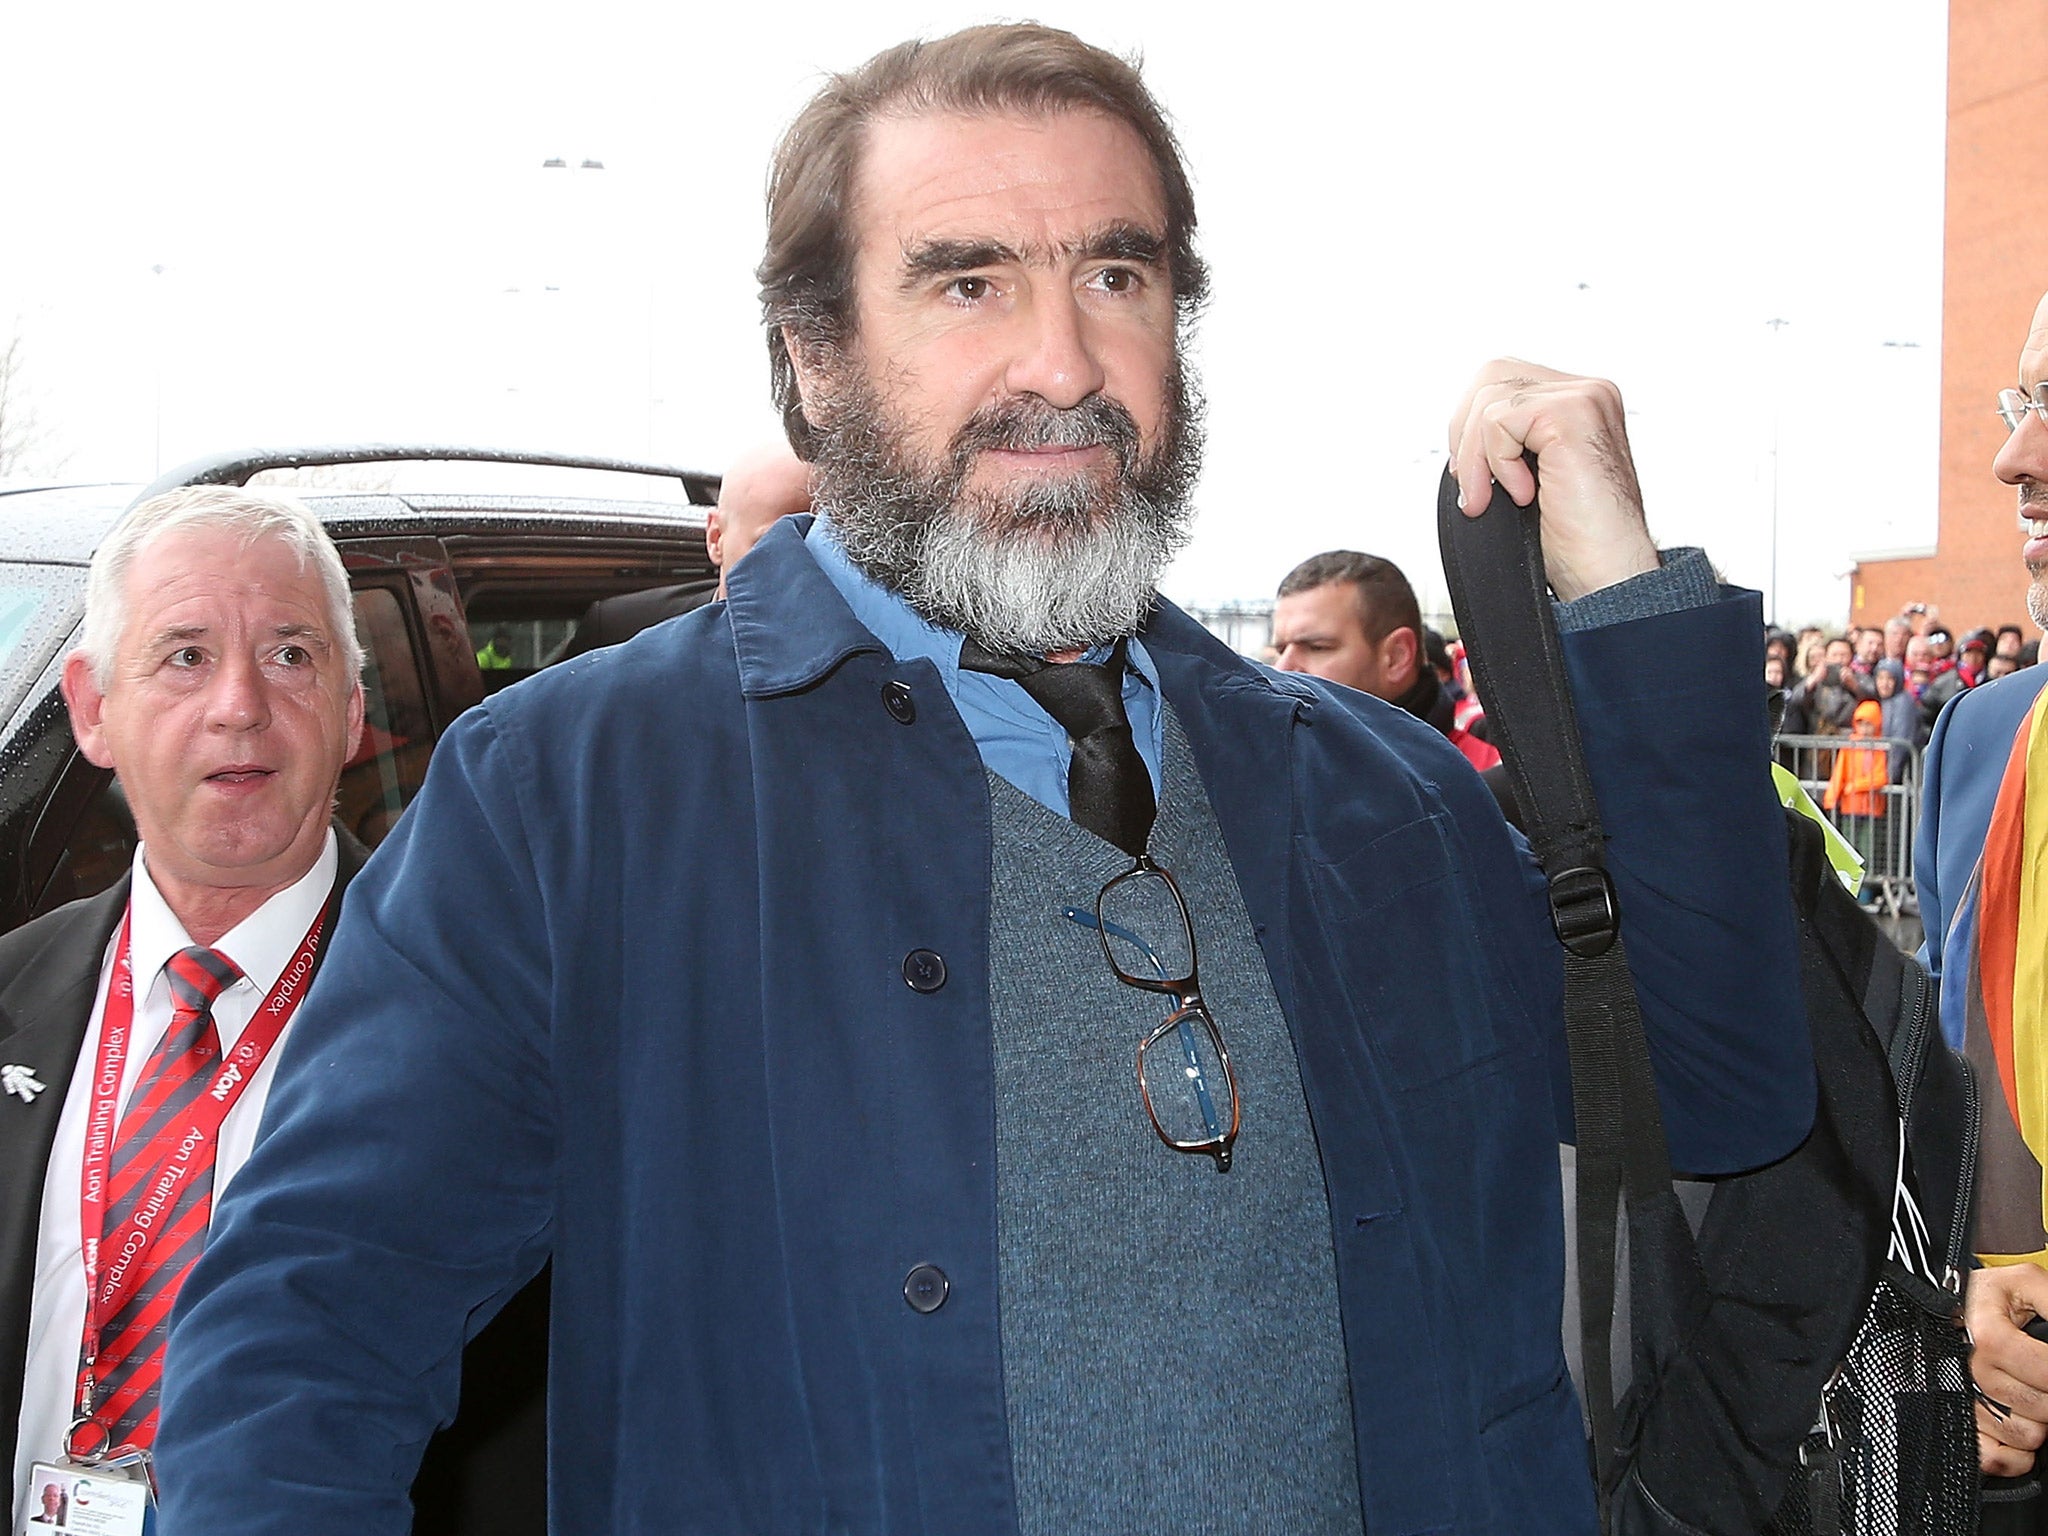 Eric Cantona at Old Trafford this season